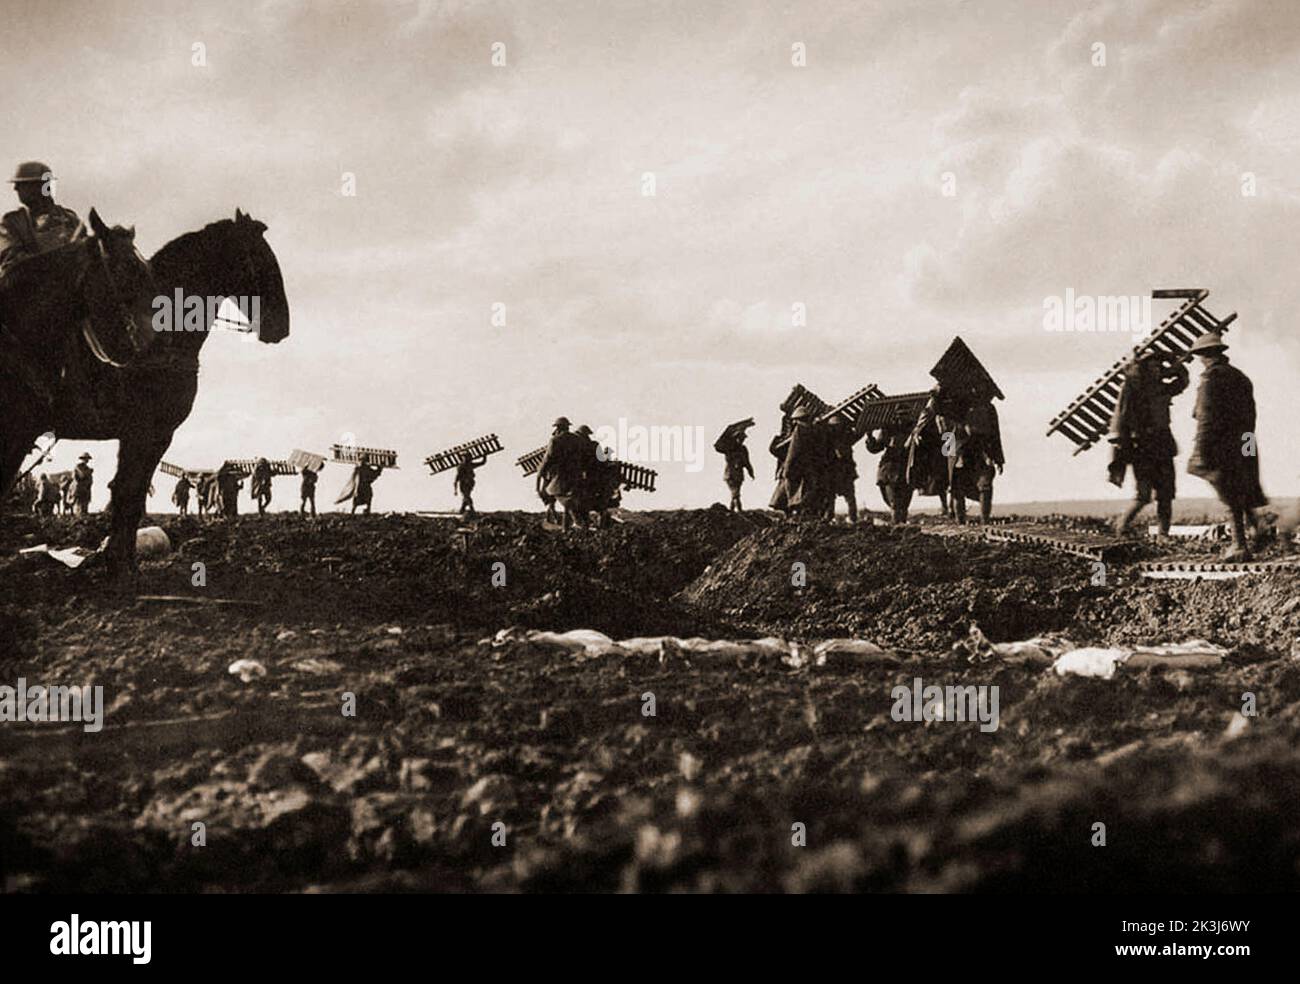 Des soldats portant des caillebotis pendant la troisième bataille d'Ypres en 1917 – conçus par Sir Douglas Haig pour capturer la crête de Passchendaele. Photographie de Frank Hurley (1885 1962) un photographe australien. Banque D'Images